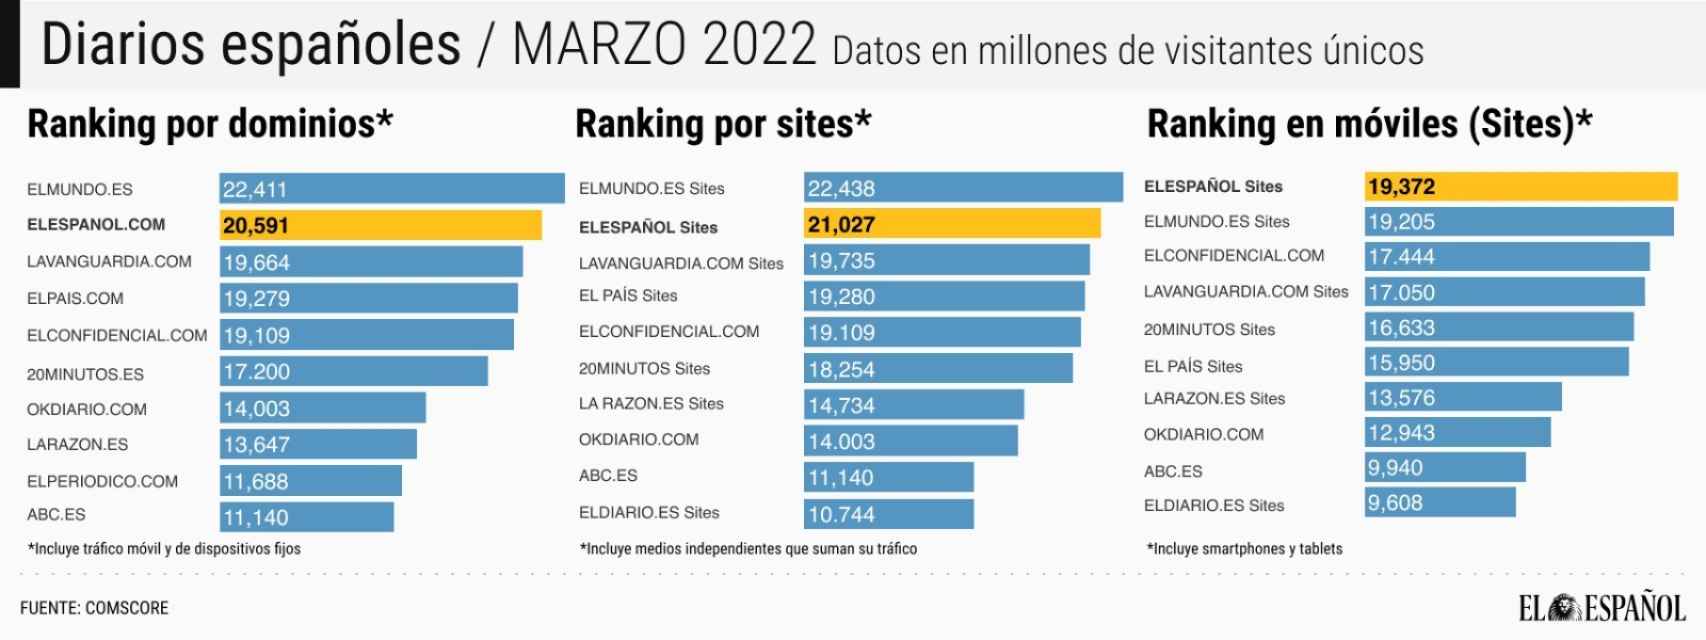 Fuente de datos: Comscore MMX Multi-platform; Audiencia Total, marzo 2022, España.